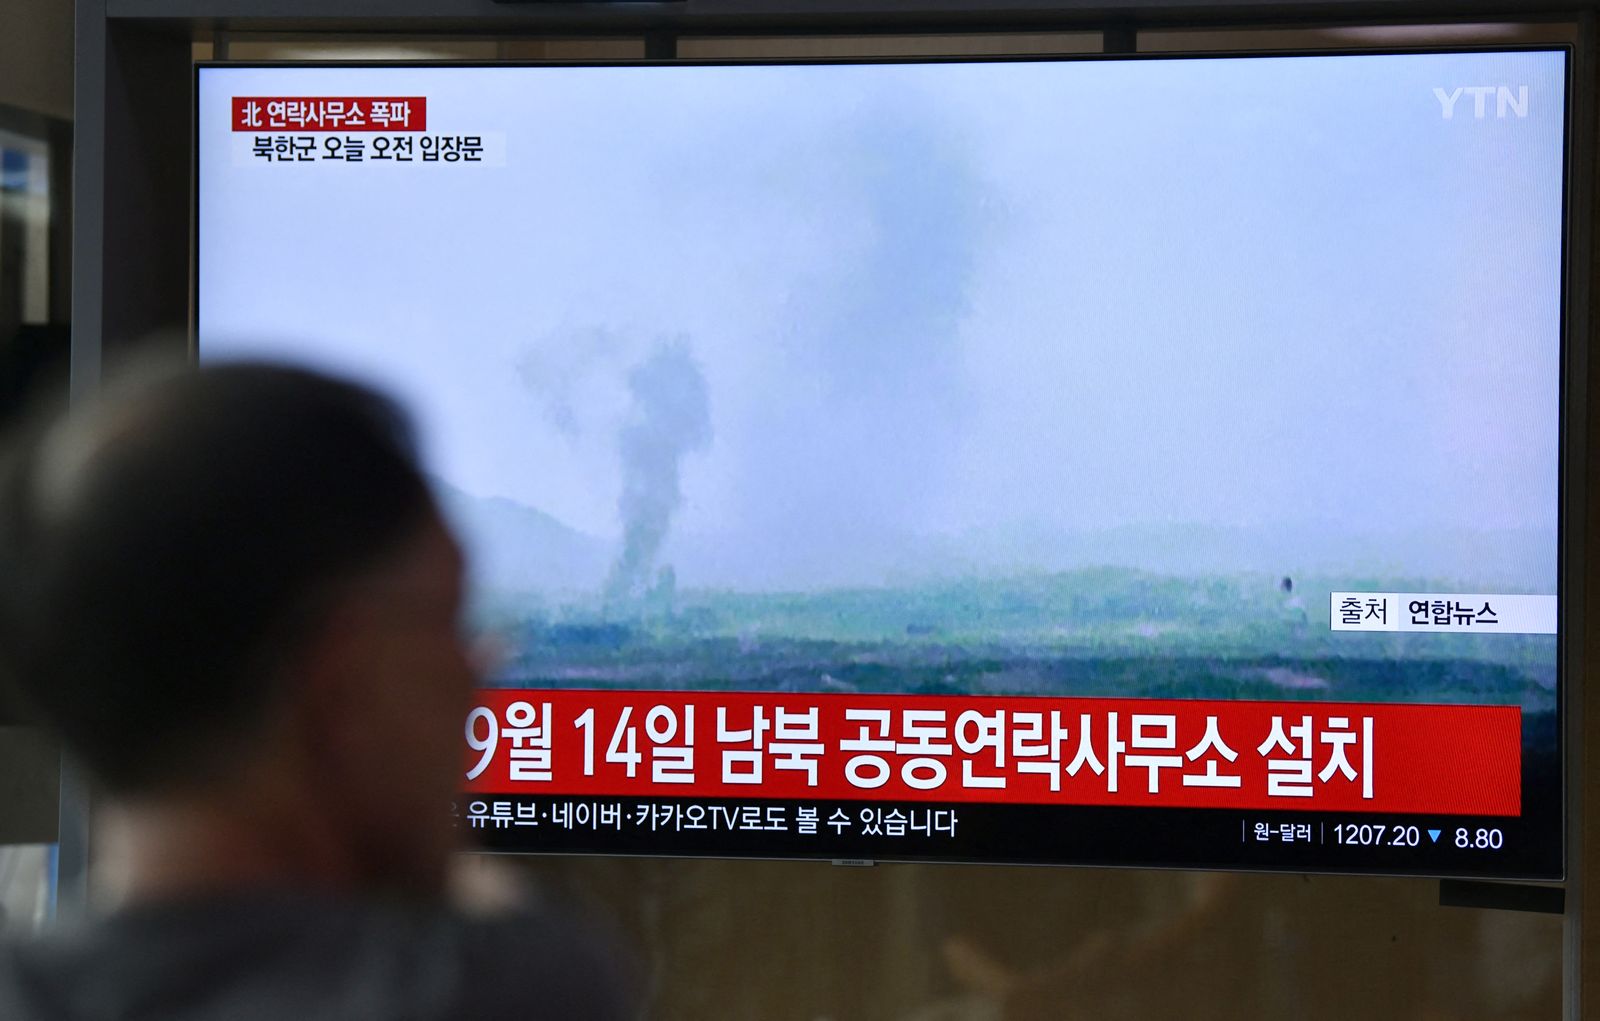 يتابع على شاشة تلفزة في سيول، تفجير بيونغ يانغ مكتب اتصال بين الكوريتين في مجمّع كايسونغ الصناعي بكوريا الشمالية - 16 يونيو 2020 - AFP